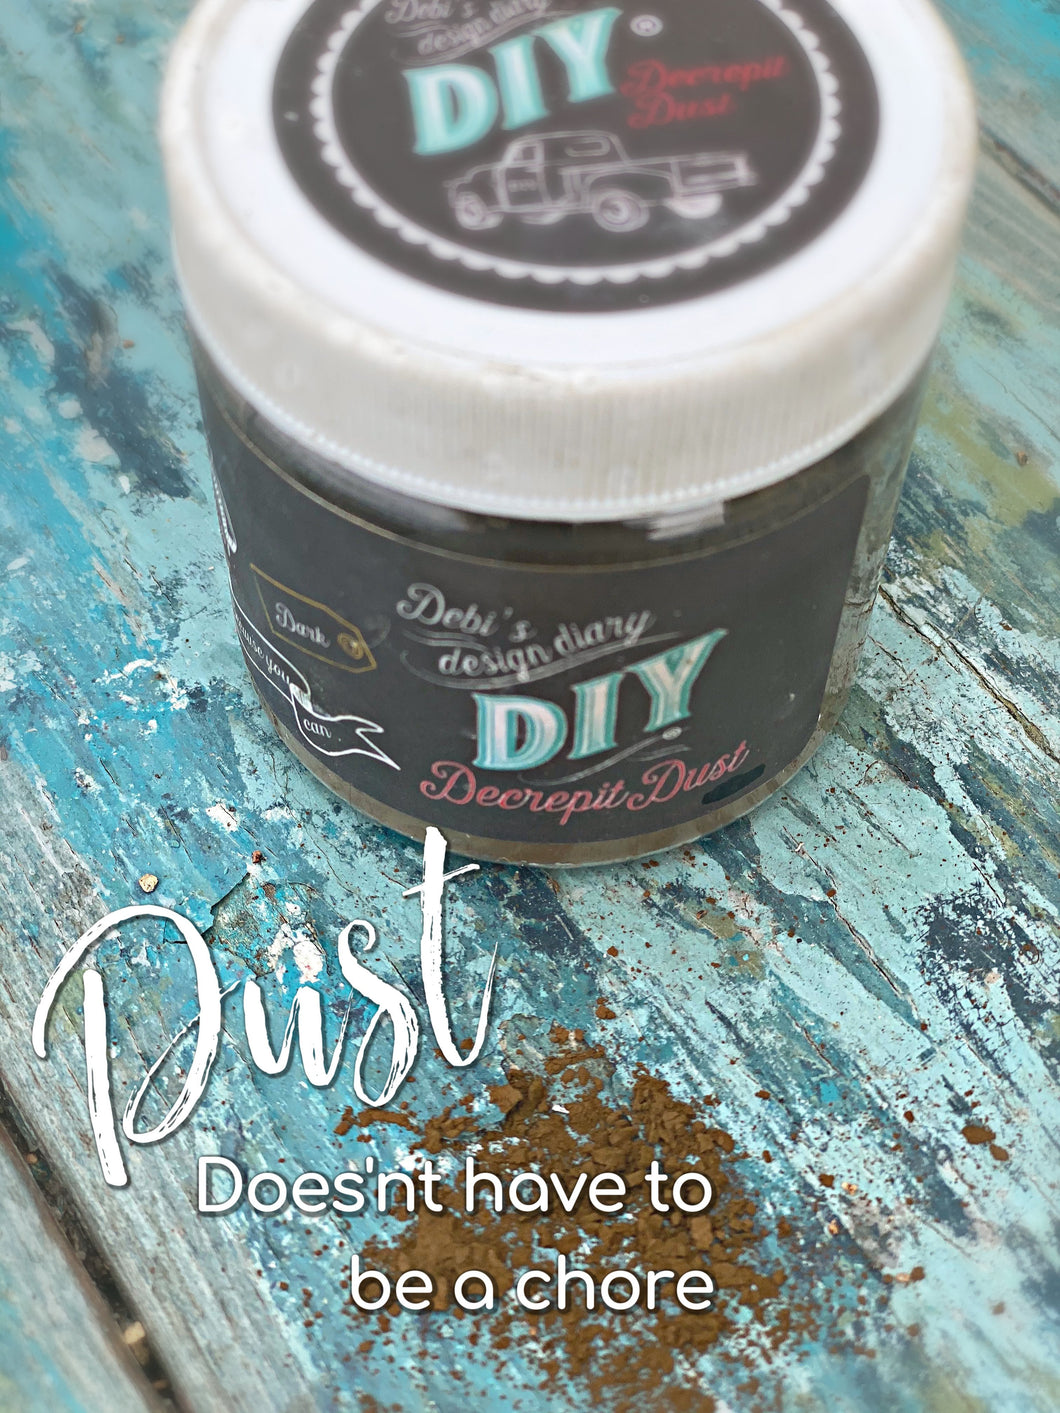 DIY Decrepit Dust